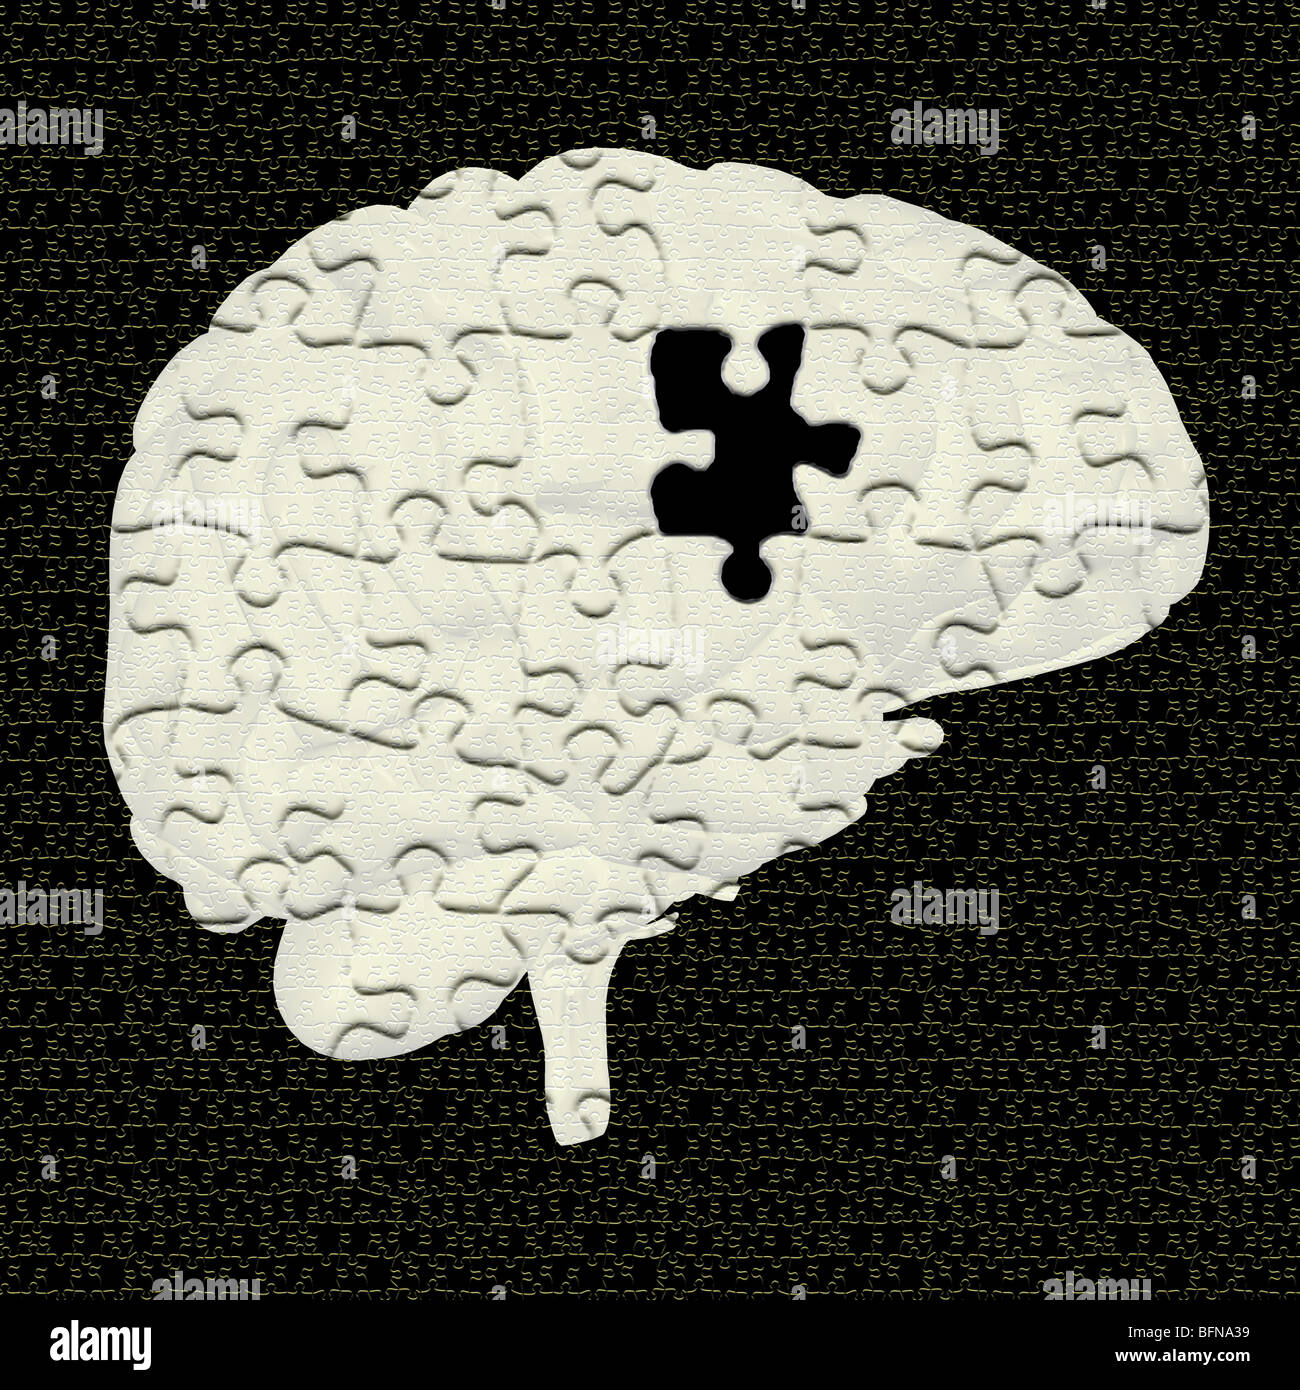 Illustrazione del cervello umano è raffigurato come un puzzle o mistero Foto Stock